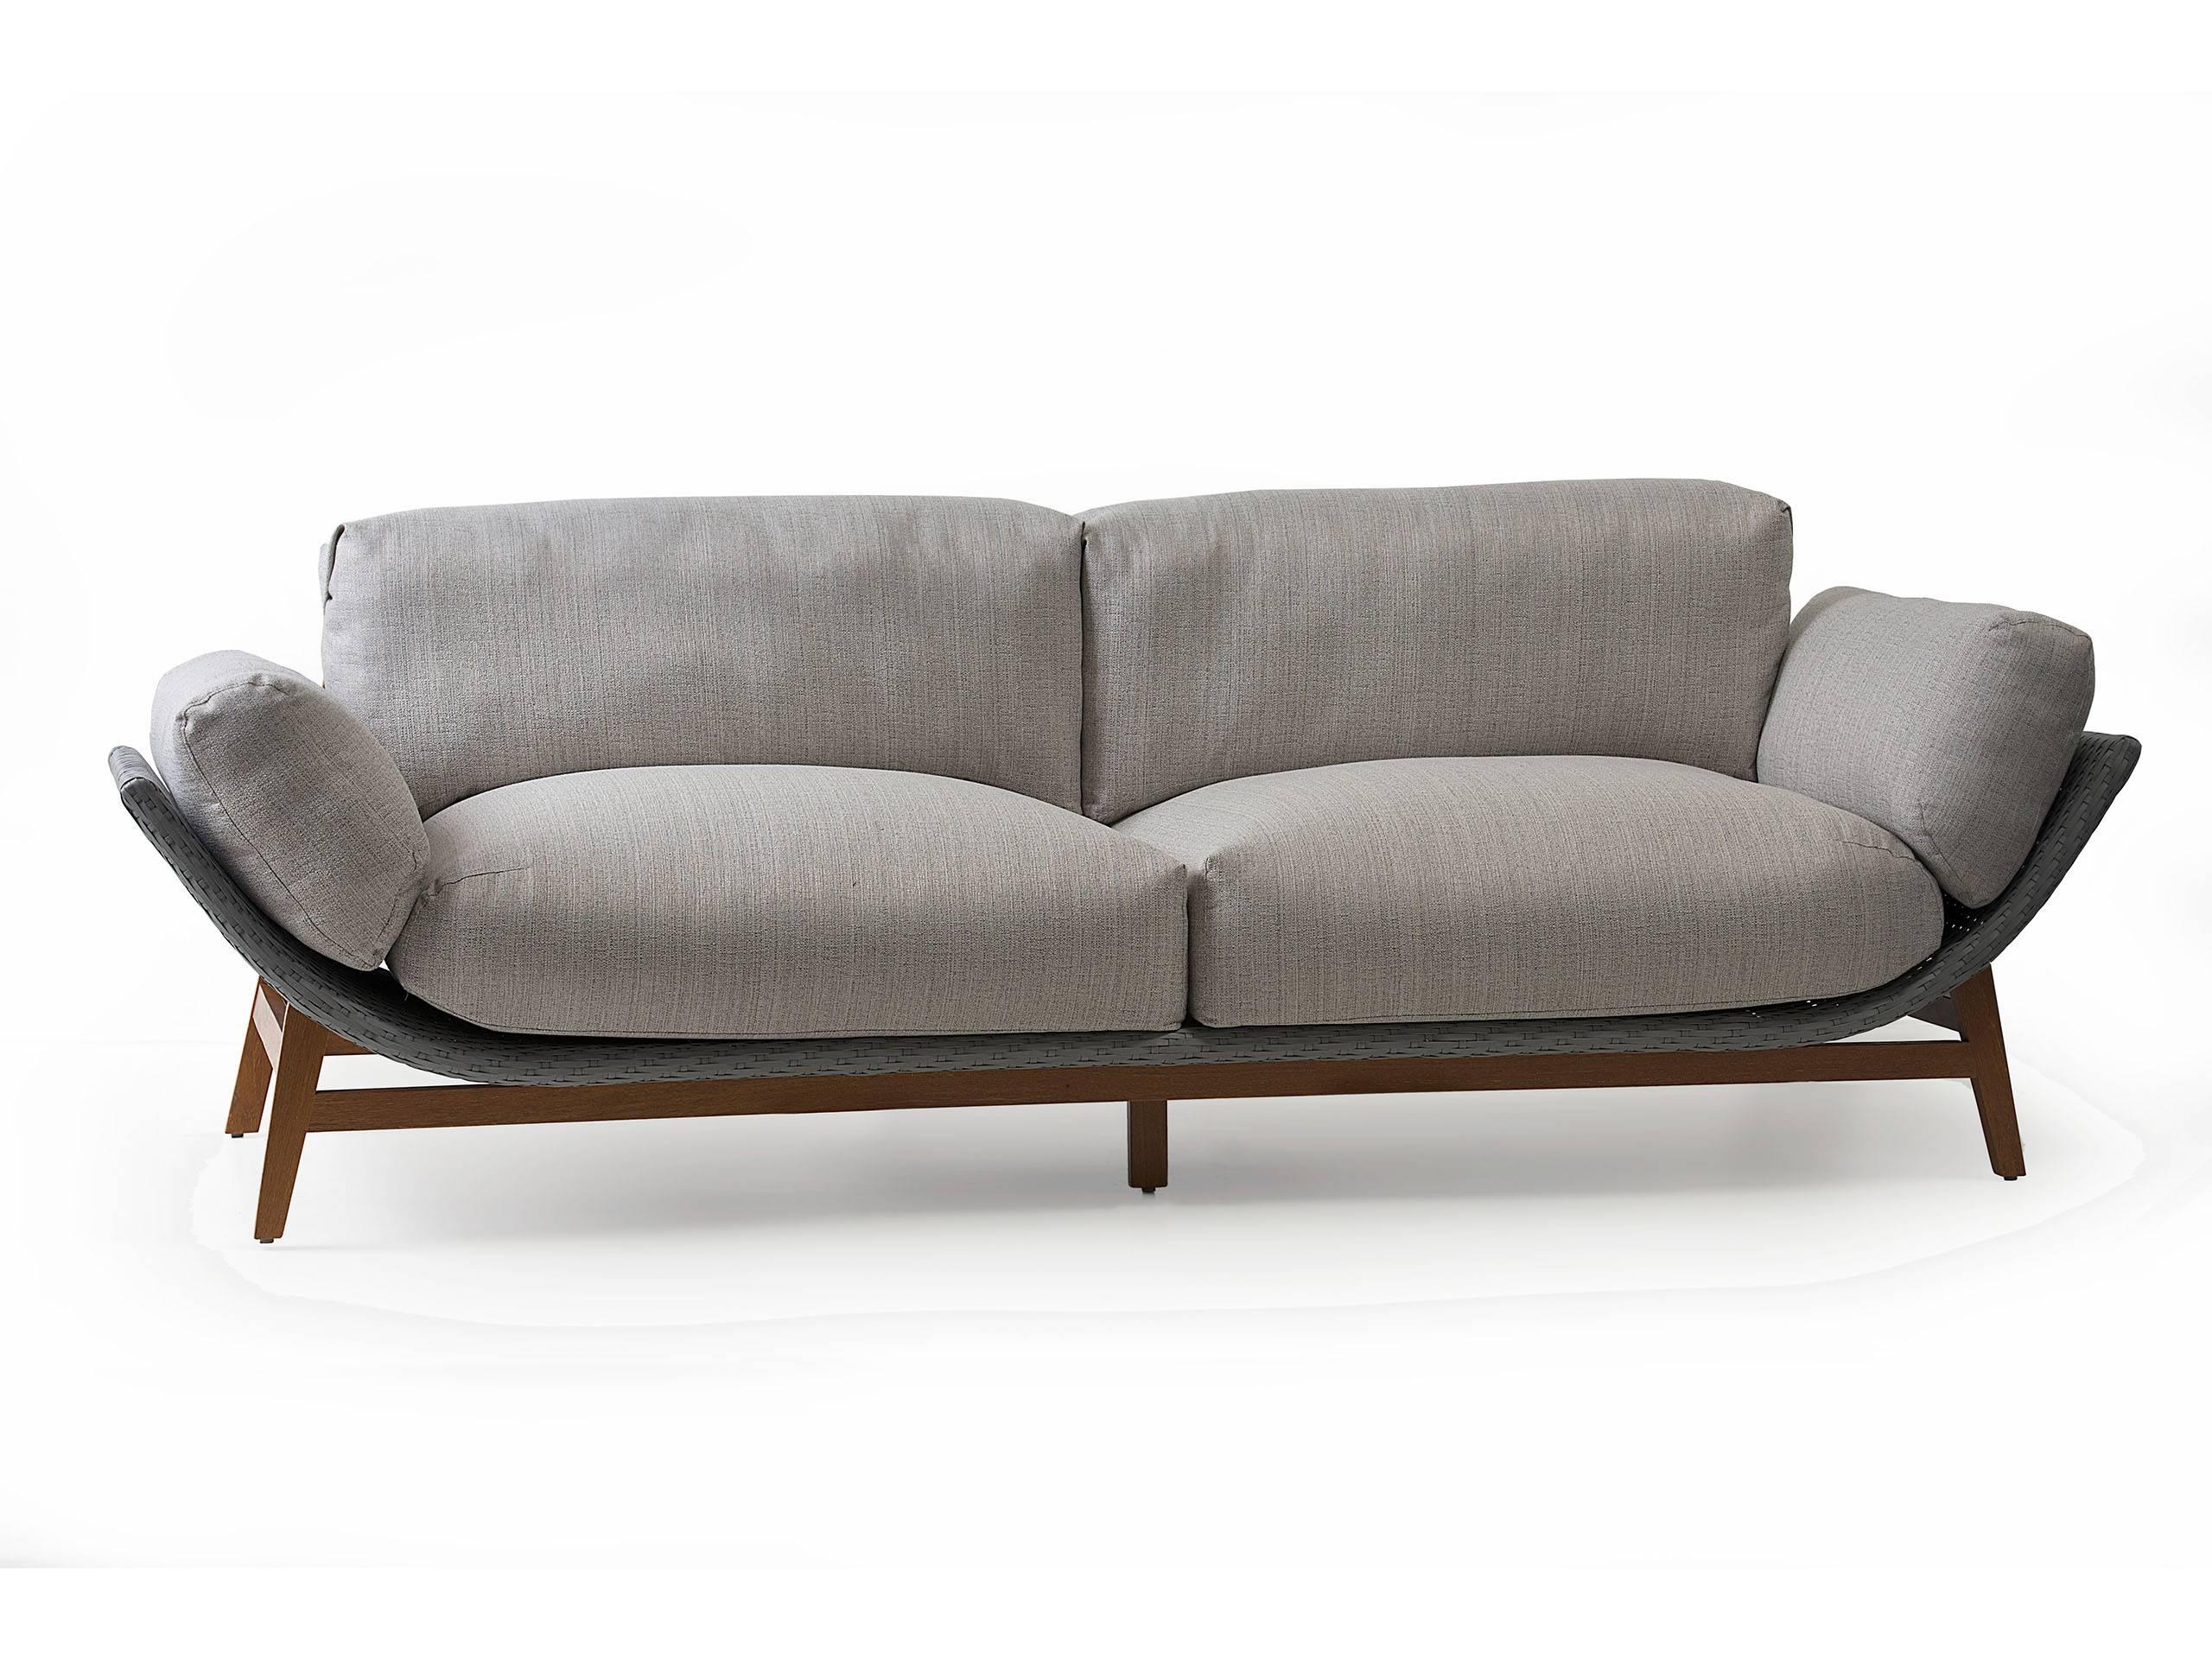 Le canapé Arca est un meuble d'extérieur. Dans ce projet de canapé et de fauteuil, nous avons établi un dialogue entre courbes/lignes droites et matériaux rigides/souples dans lequel l'élément frappant qui se détache est la courbe de la base en